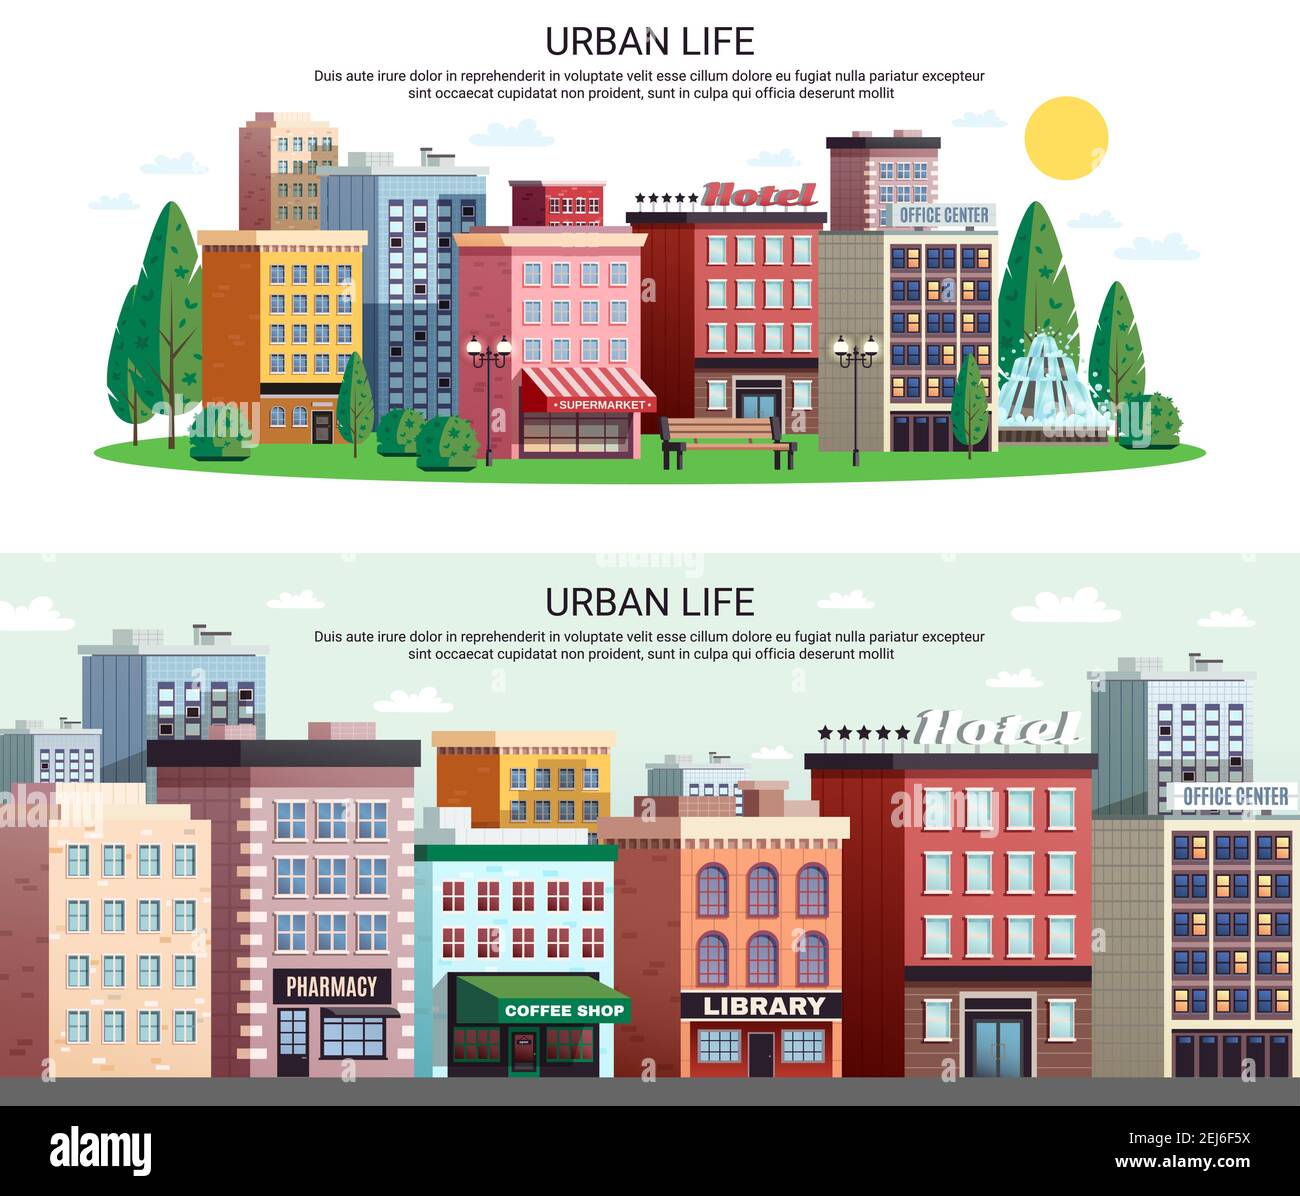 Urban Life horizontale Banner mit malerischen Stadtzentrum Einkaufsviertel Häuser mit Zoom-Effekt isoliert Vektor-Illustration Stock Vektor